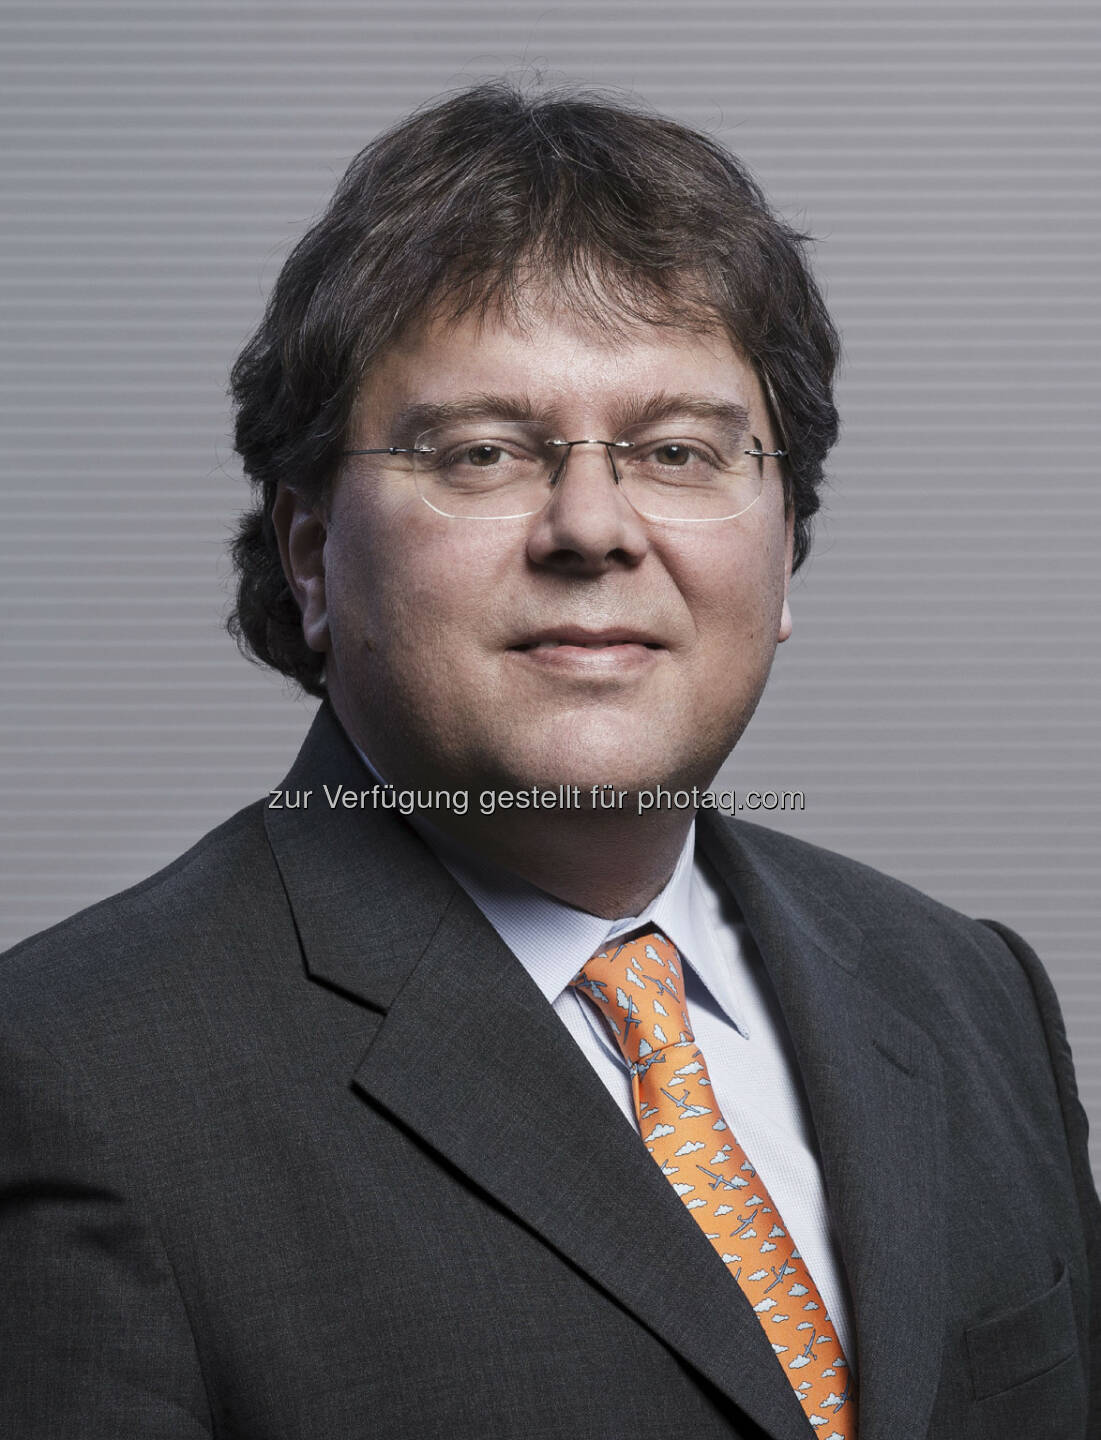 Im Vorstand der Erste Group Bank AG wird es zu einer Personalrochade kommen: Manfred Wimmer wird mit 1. September 2013 auf eigenen Wunsch aus dem Vorstand ausscheiden und in den Ruhestand treten. In seiner Funktion als Finanzvorstand wird ihm der bisherige Risikovorstand Gernot Mittendorfer (Bild) nachfolgen (c) Erste Group